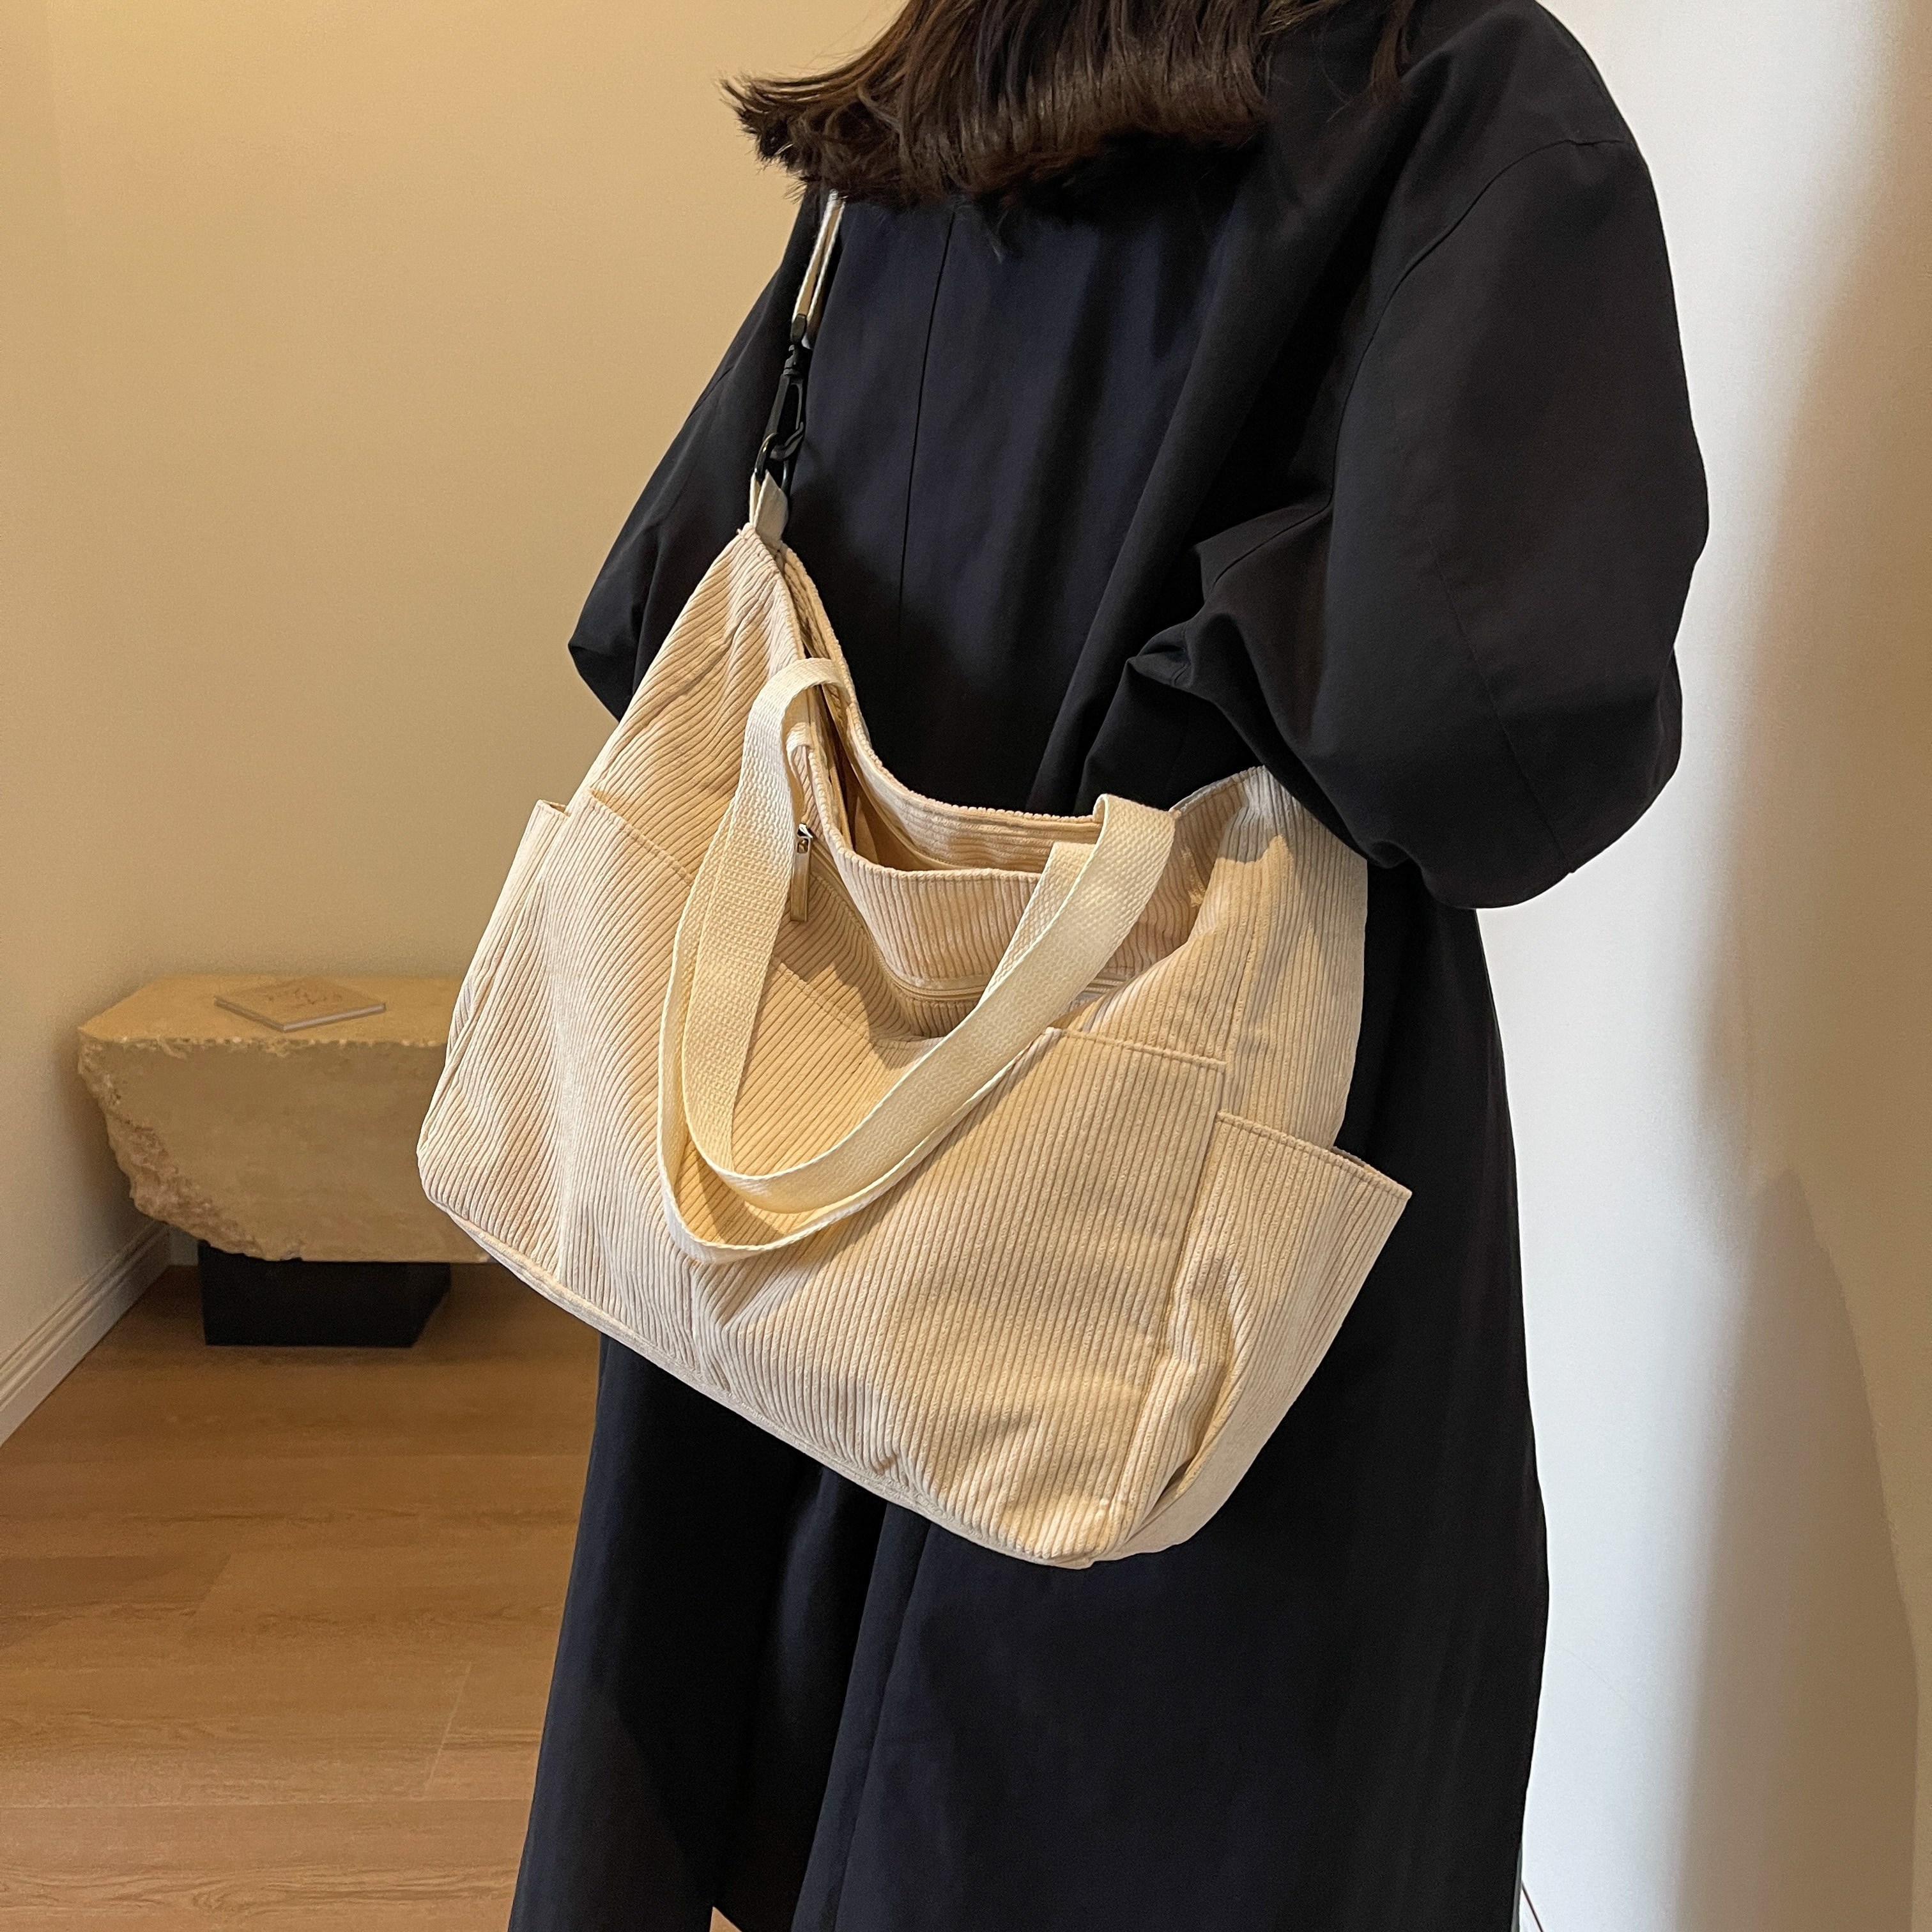 Retro Corduroy Versatile Shoulder Bag Women Large Capacity Commute